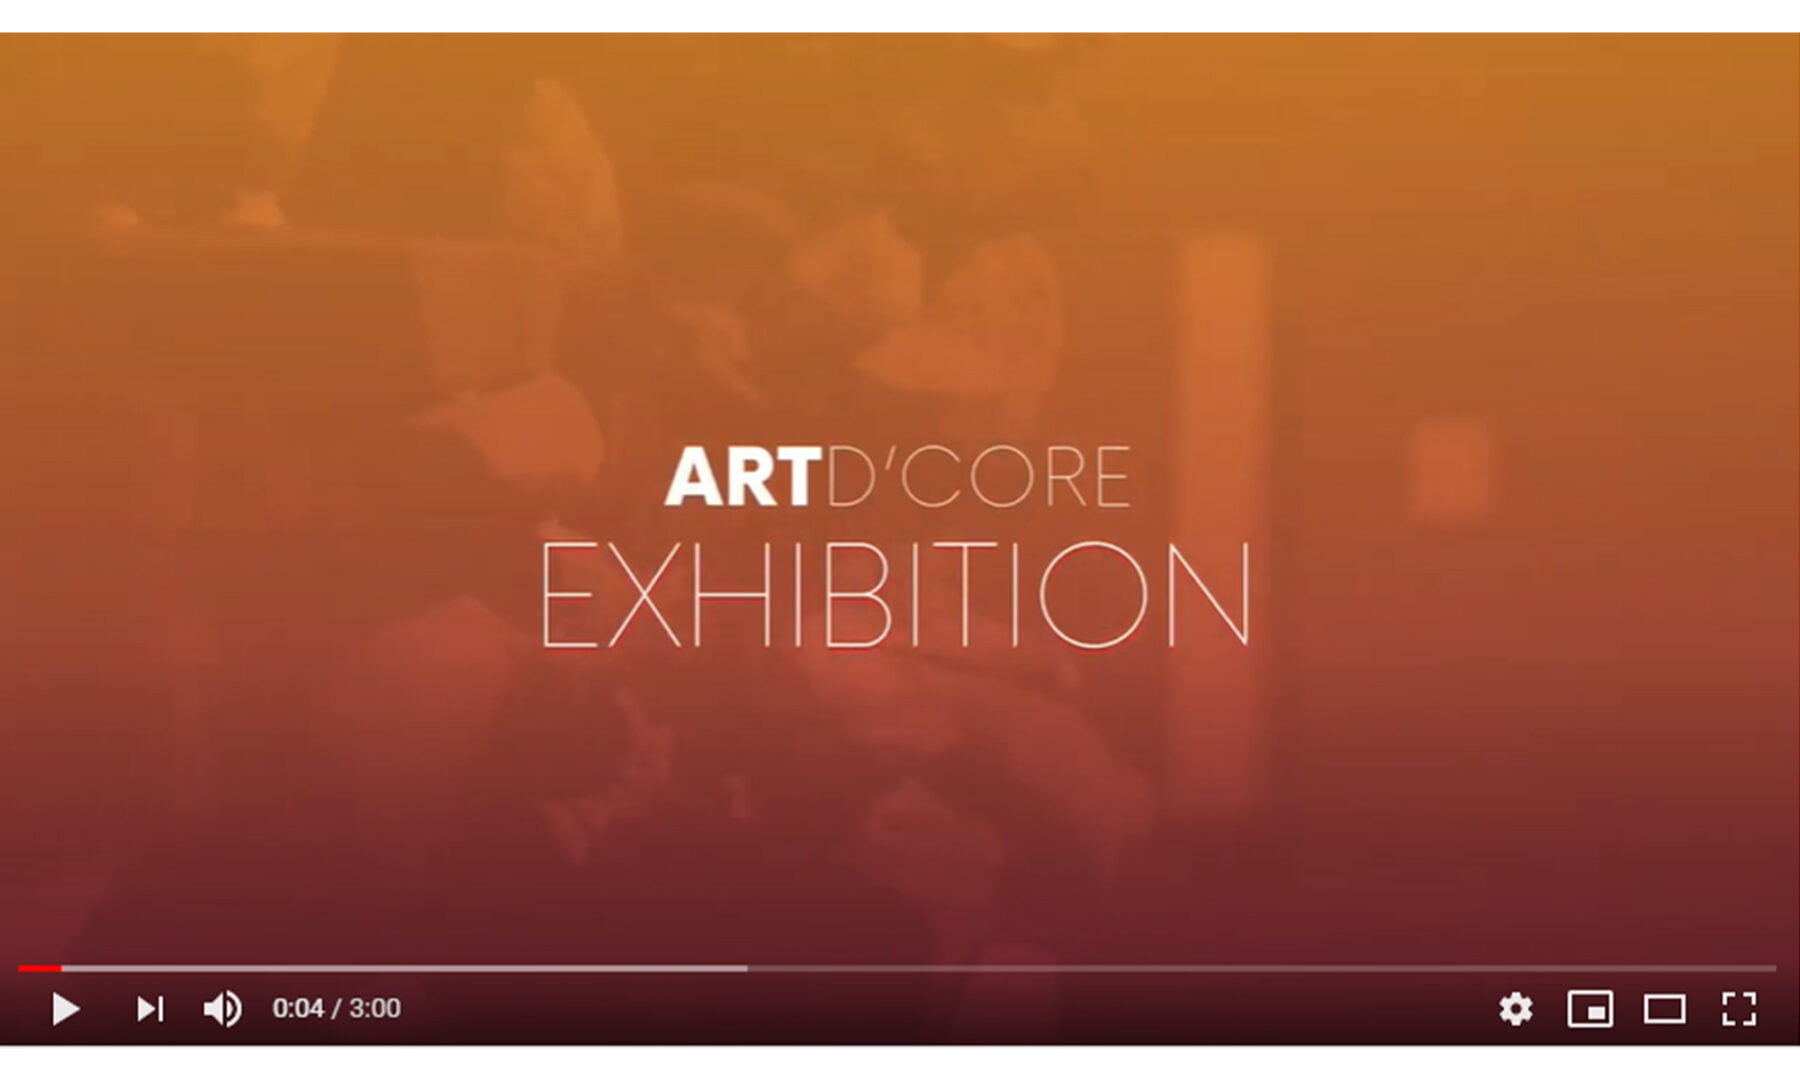 [VIDEO] Art d’Core Exhibition 2020